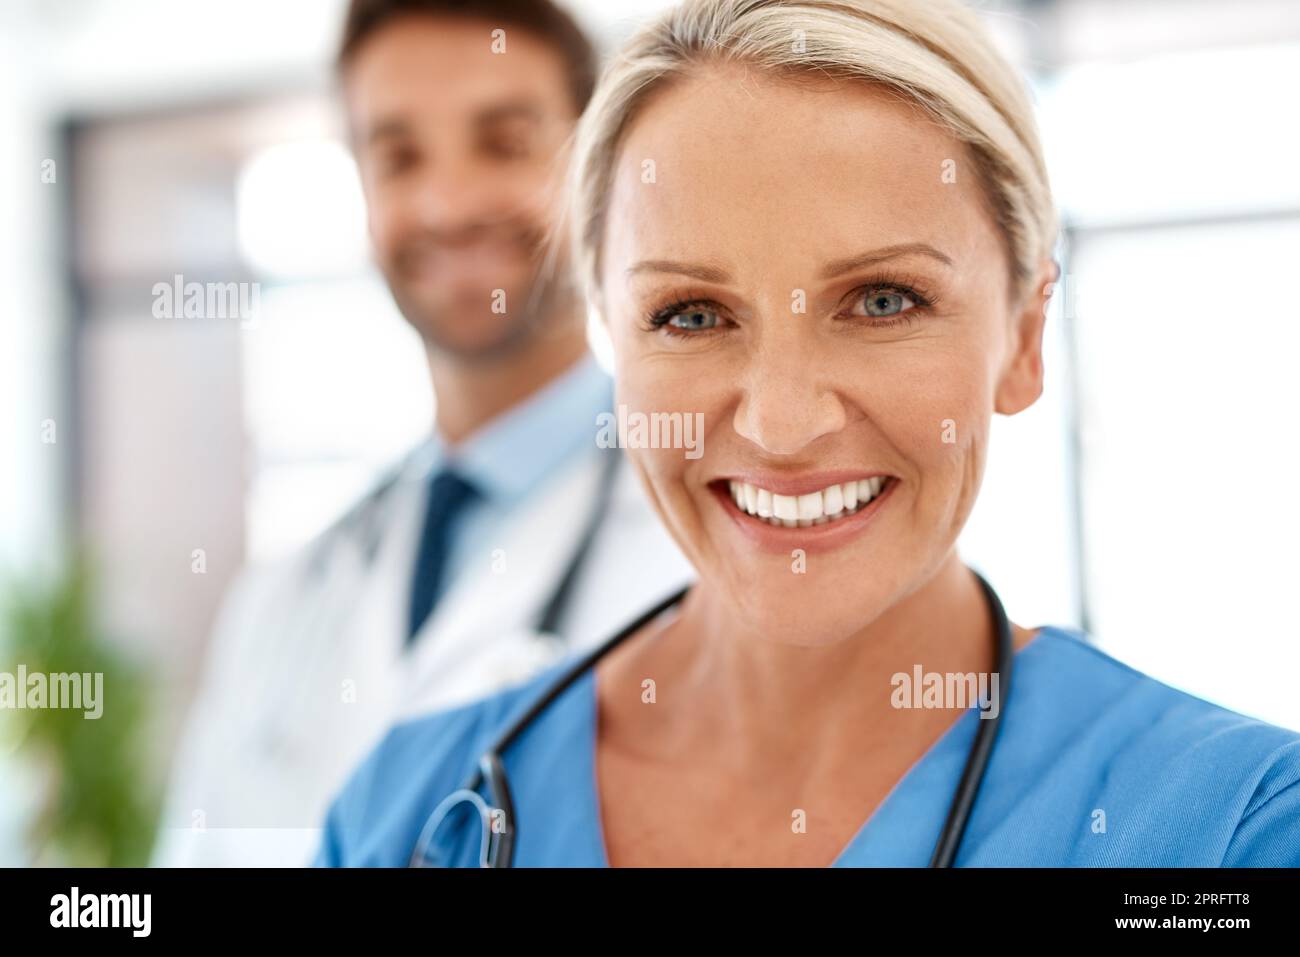 Riponete la vostra fiducia in noi. Ritratto corto di due professionisti sanitari felici che si pongono insieme in un ospedale. Foto Stock